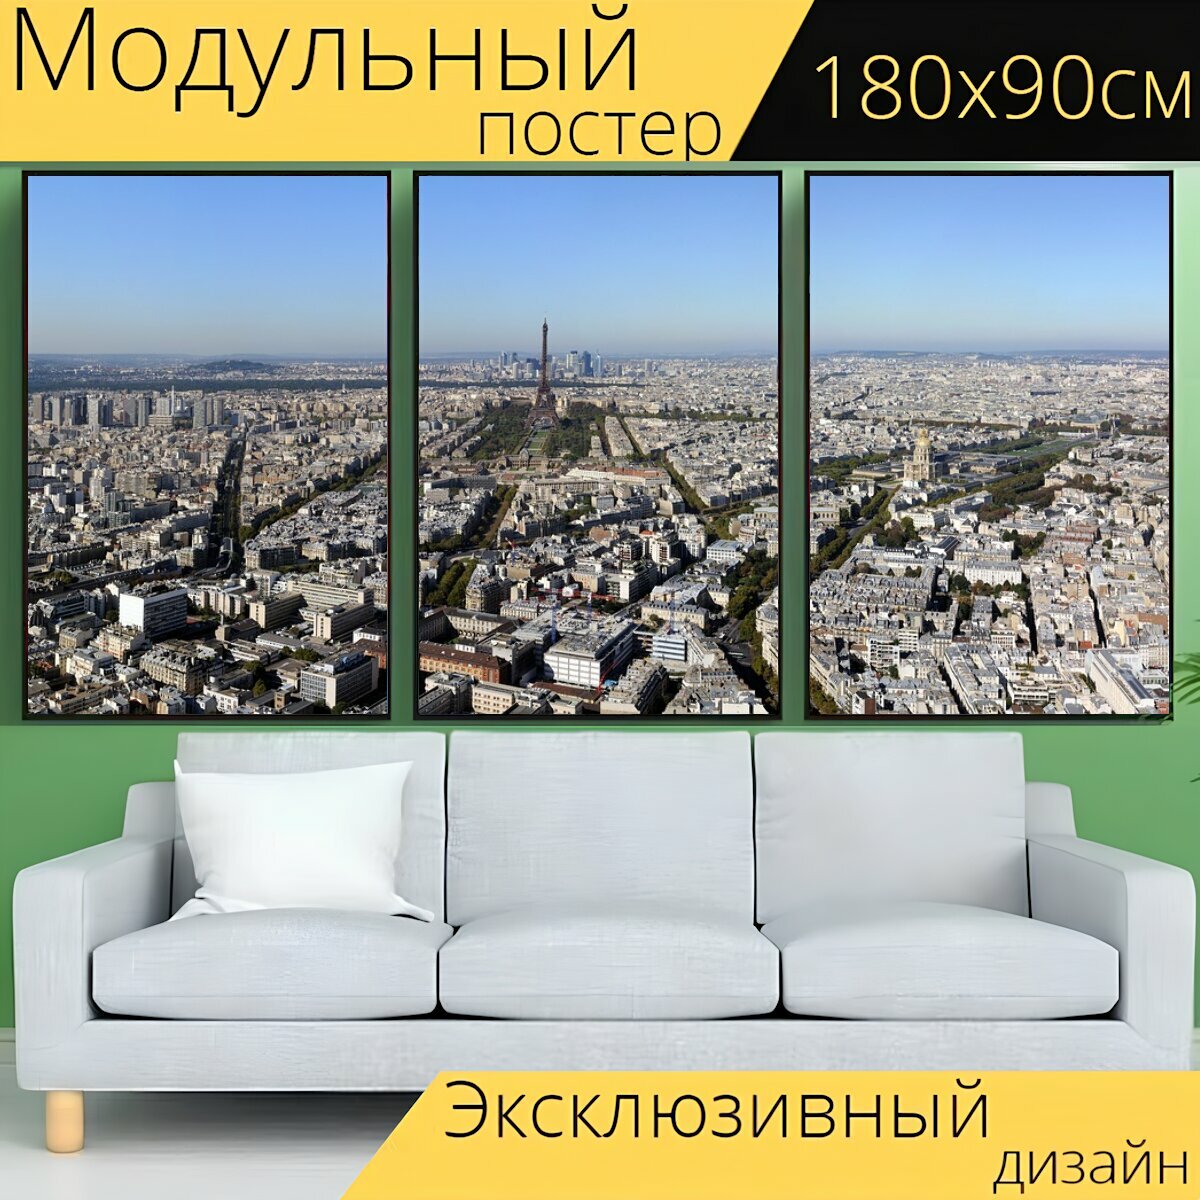 Модульный постер "Париж, пейзаж, городской" 180 x 90 см. для интерьера